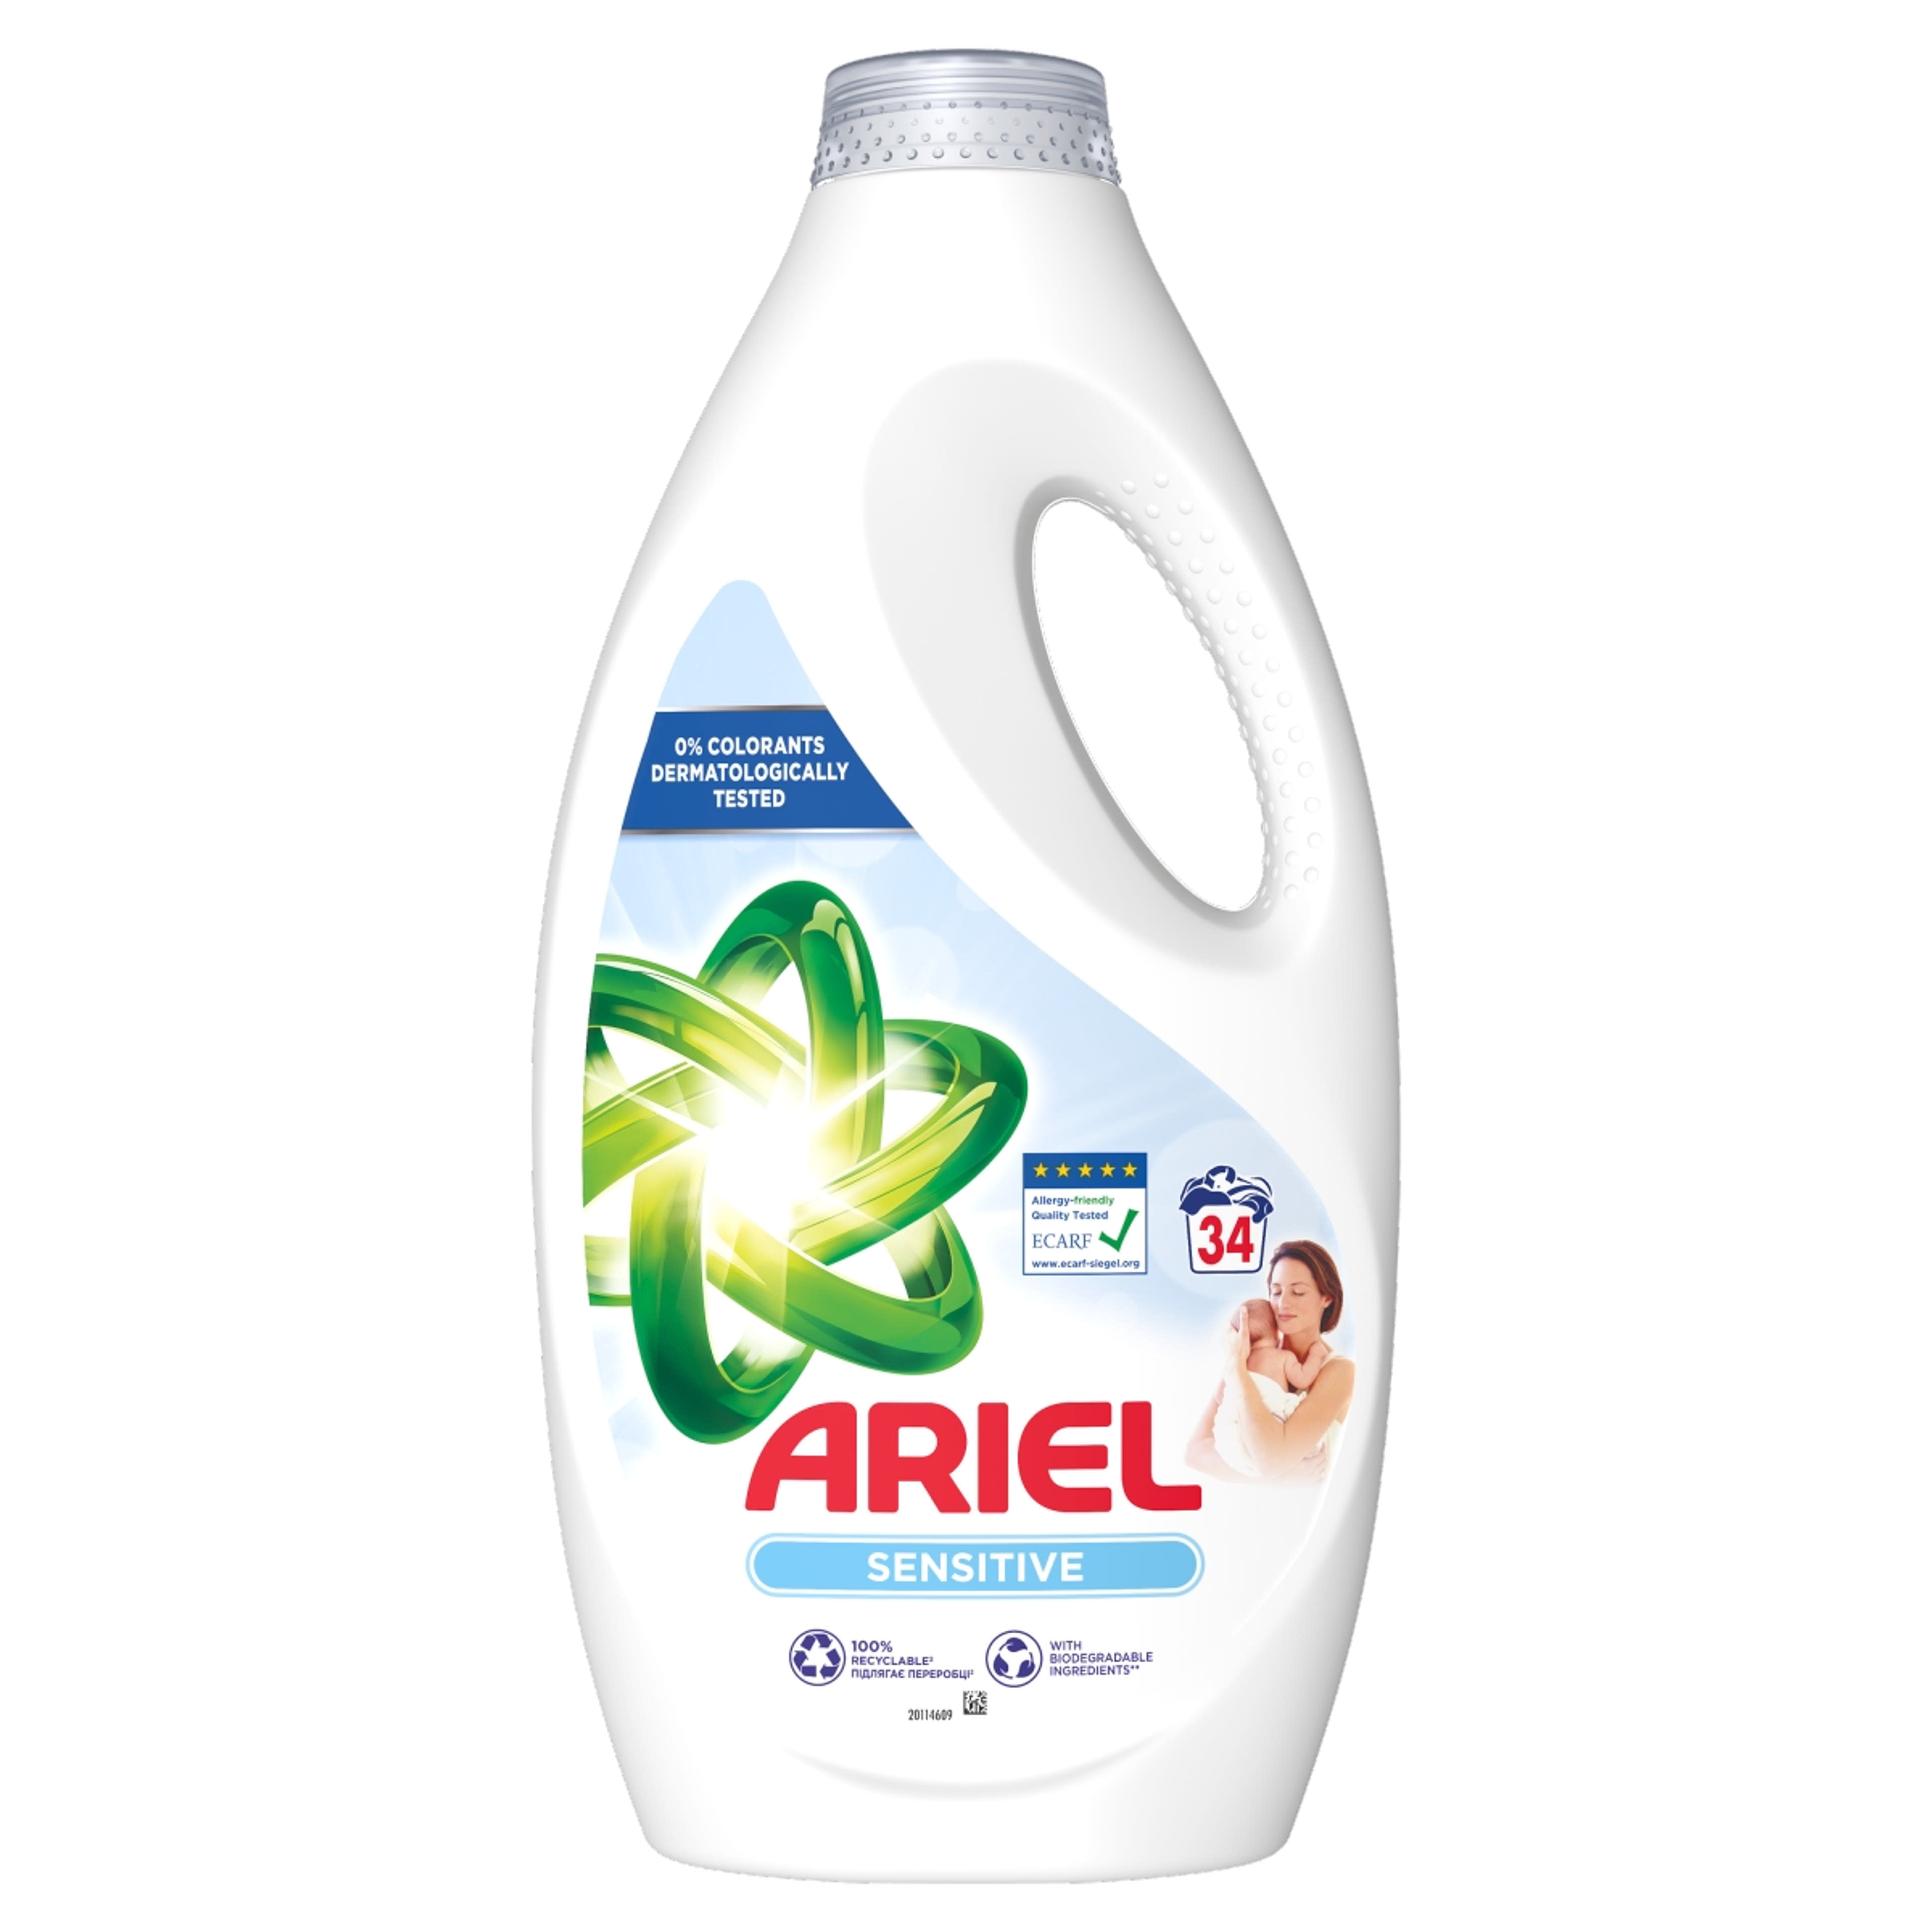 Ariel Sensitive Skin Clean & Fresh folyékony mosószer, 34 mosáshoz - 1700 ml-1